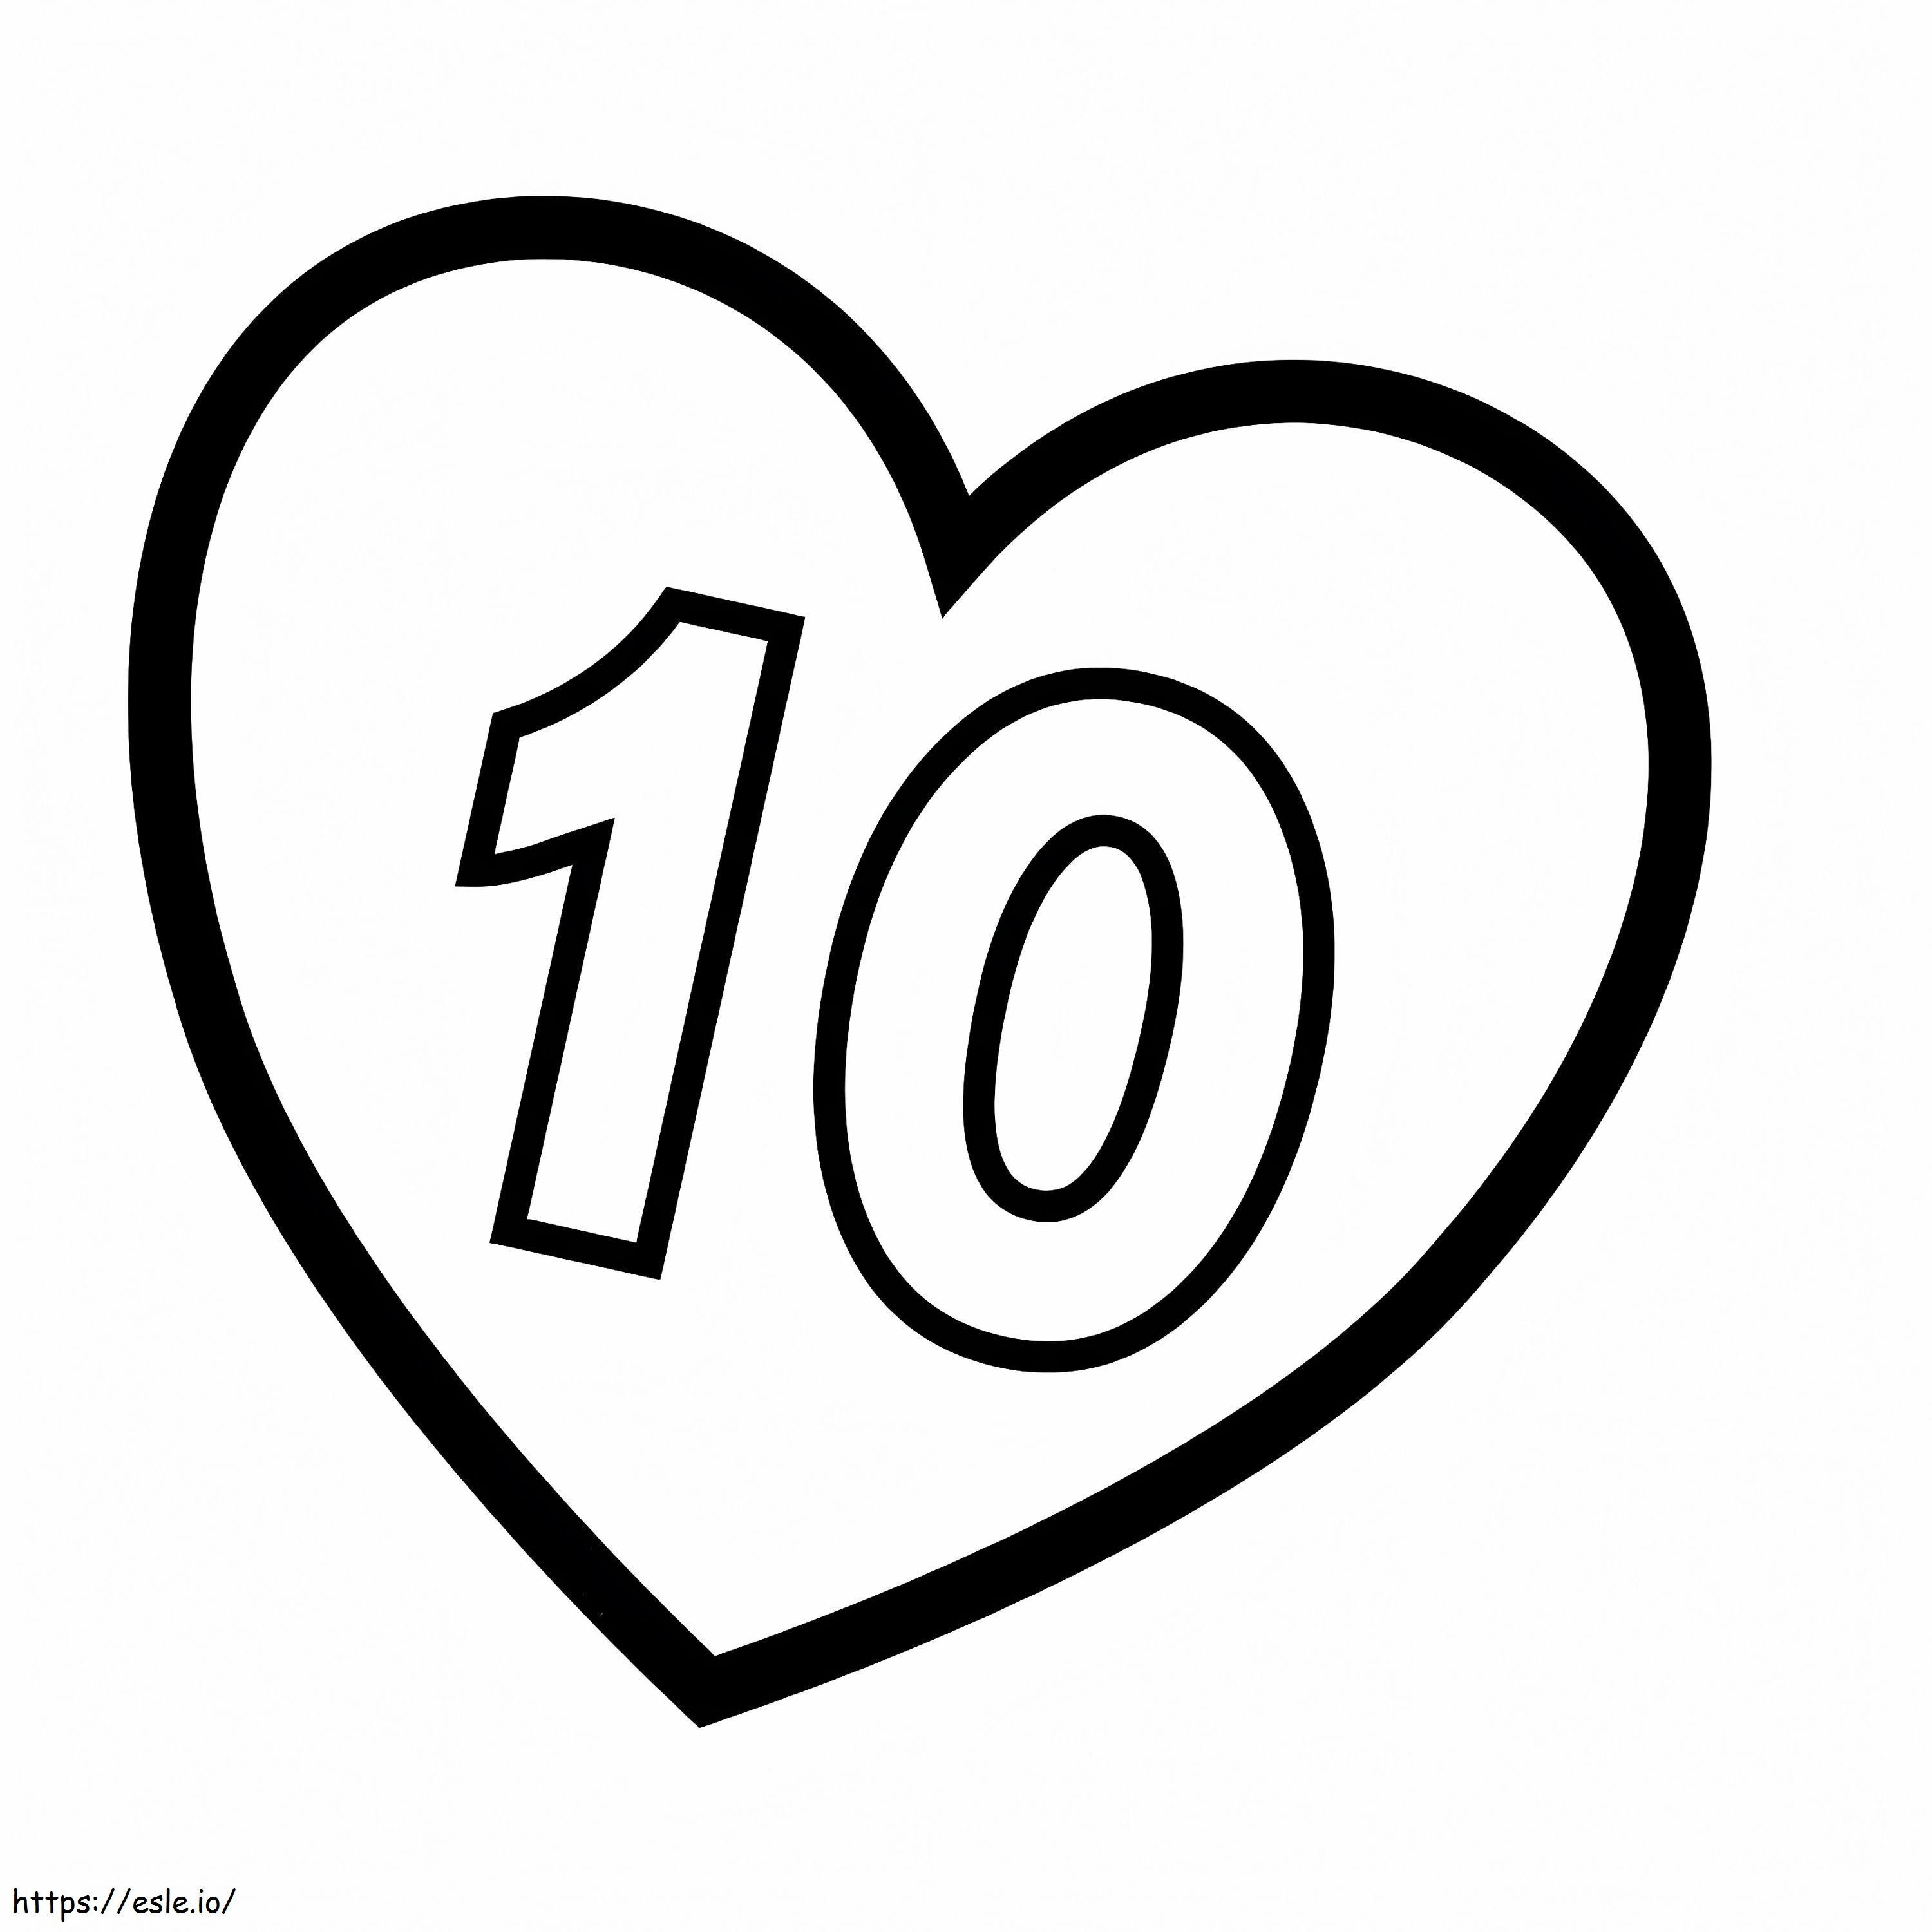 Coloriage Numéro 10 dans le coeur à imprimer dessin